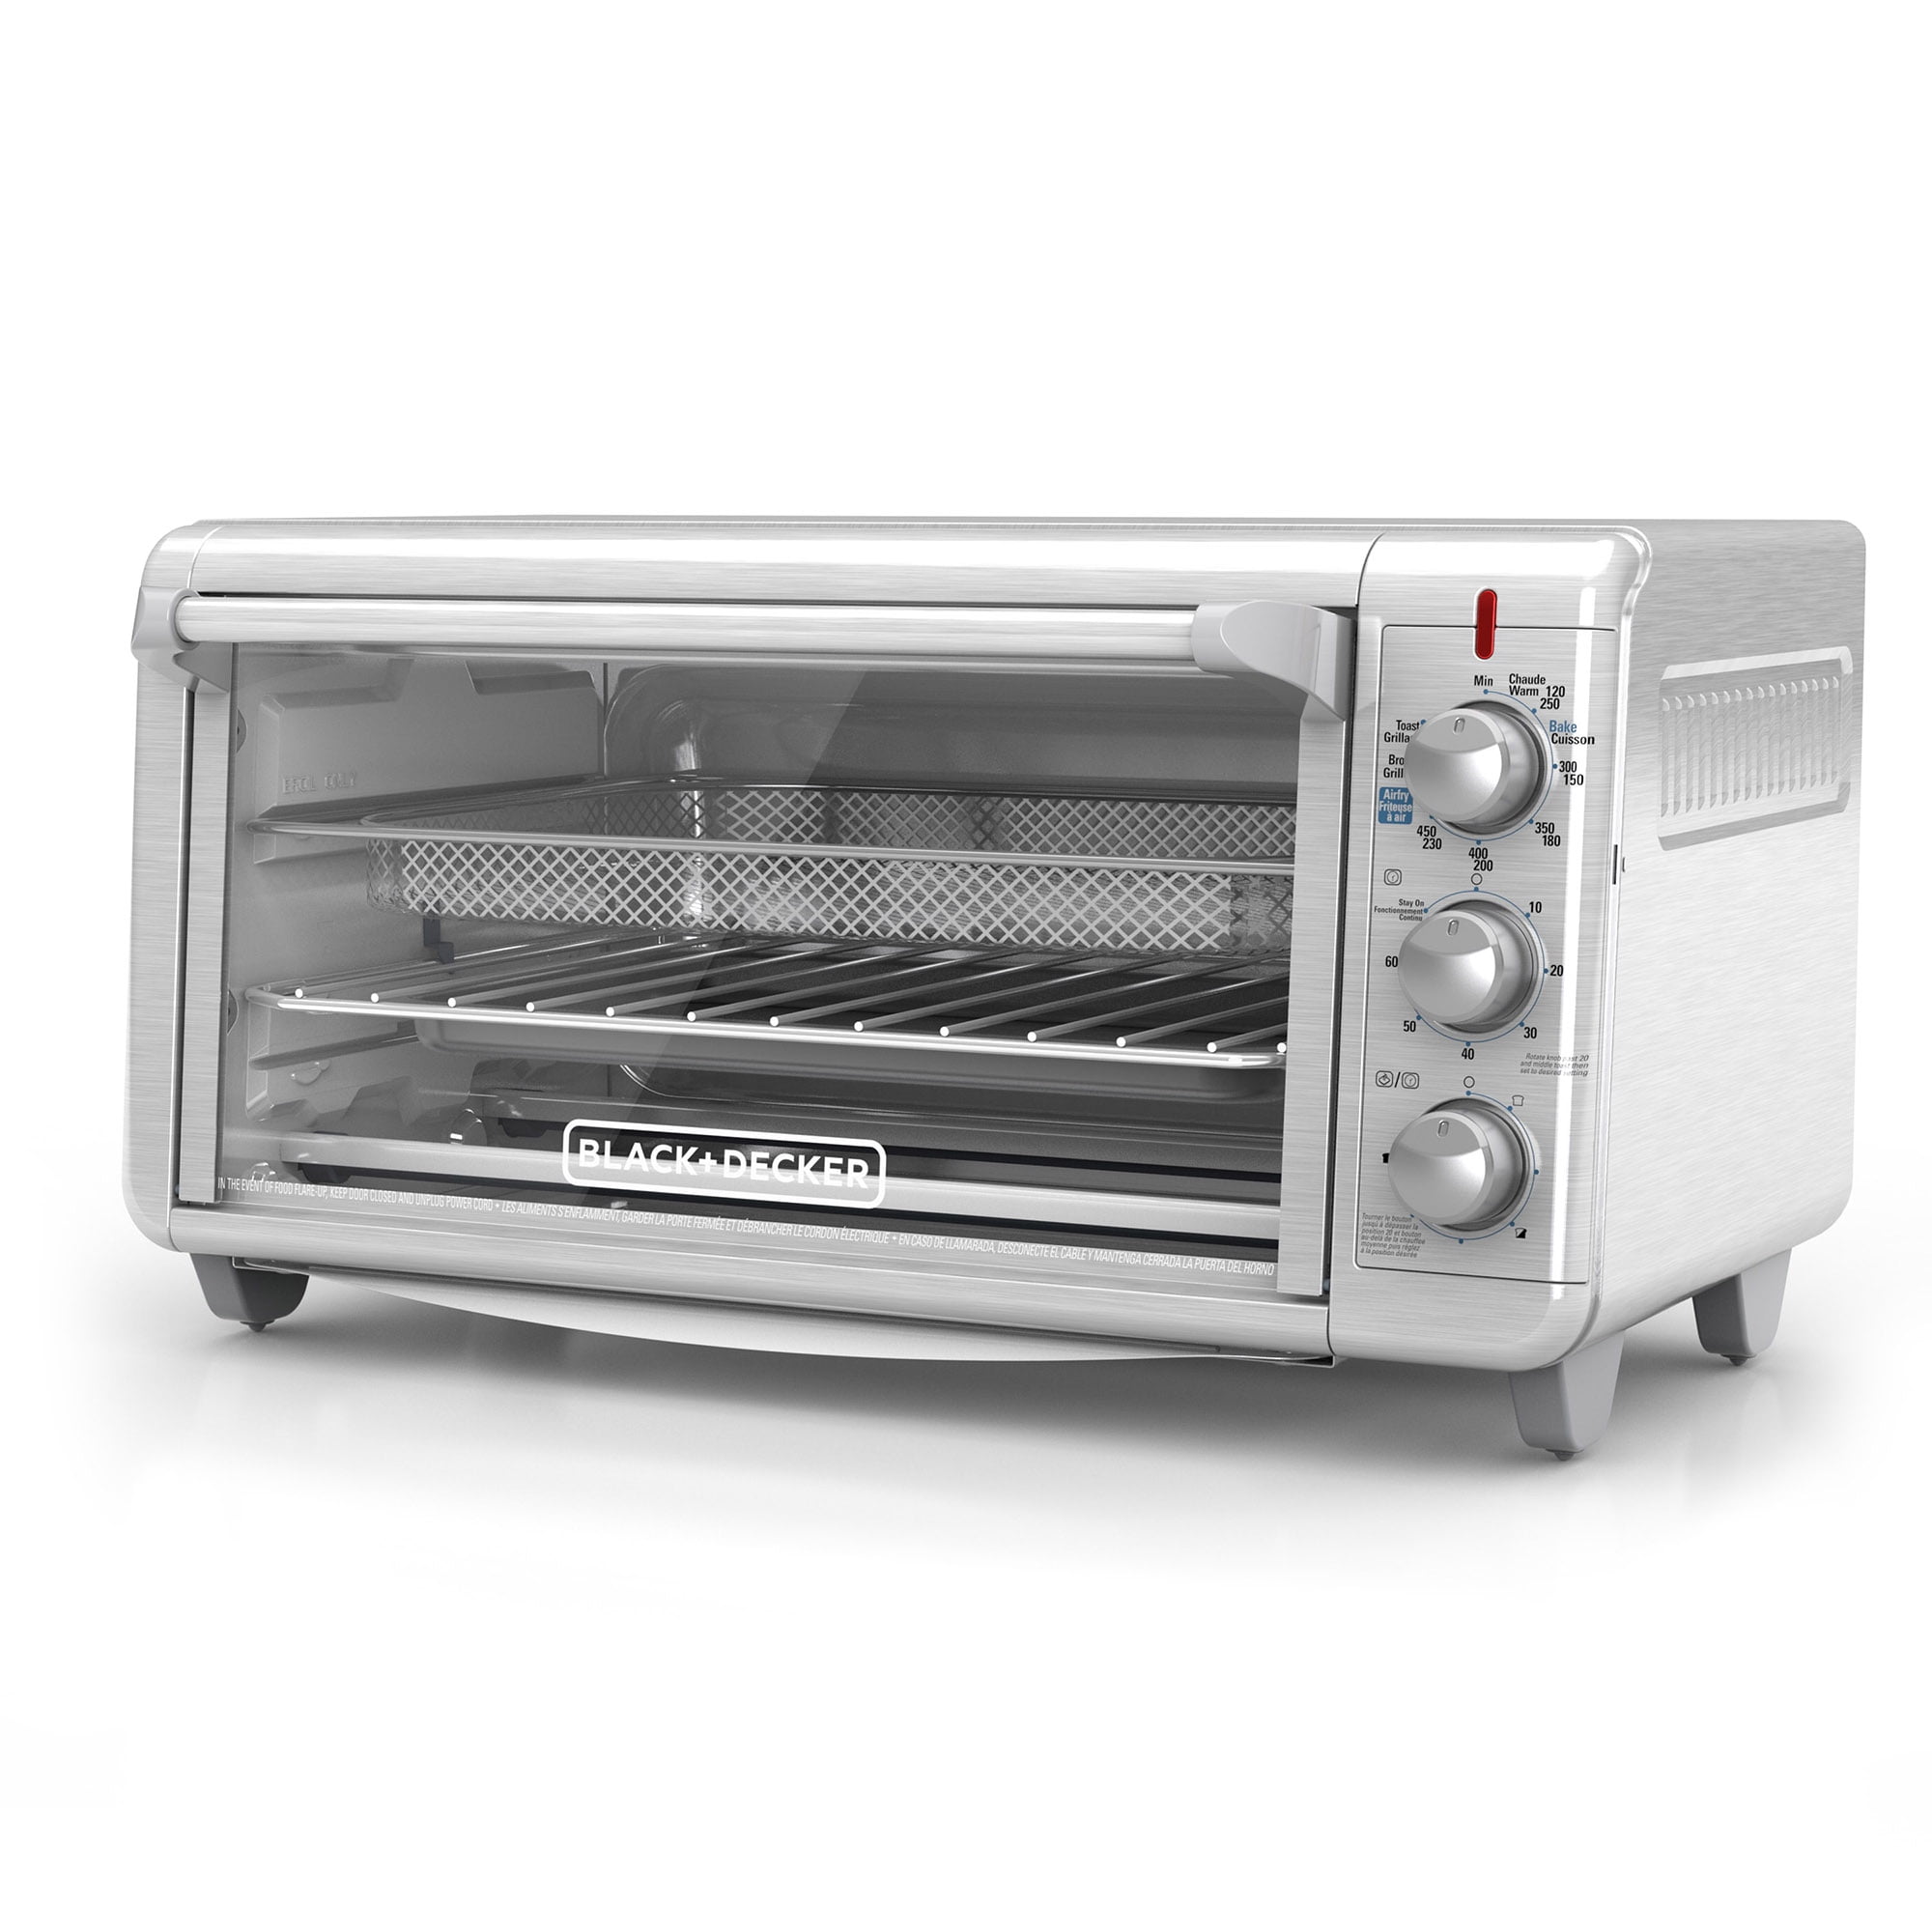 Black+Decker Toaster Oven, White TO1342W - ATBIZ